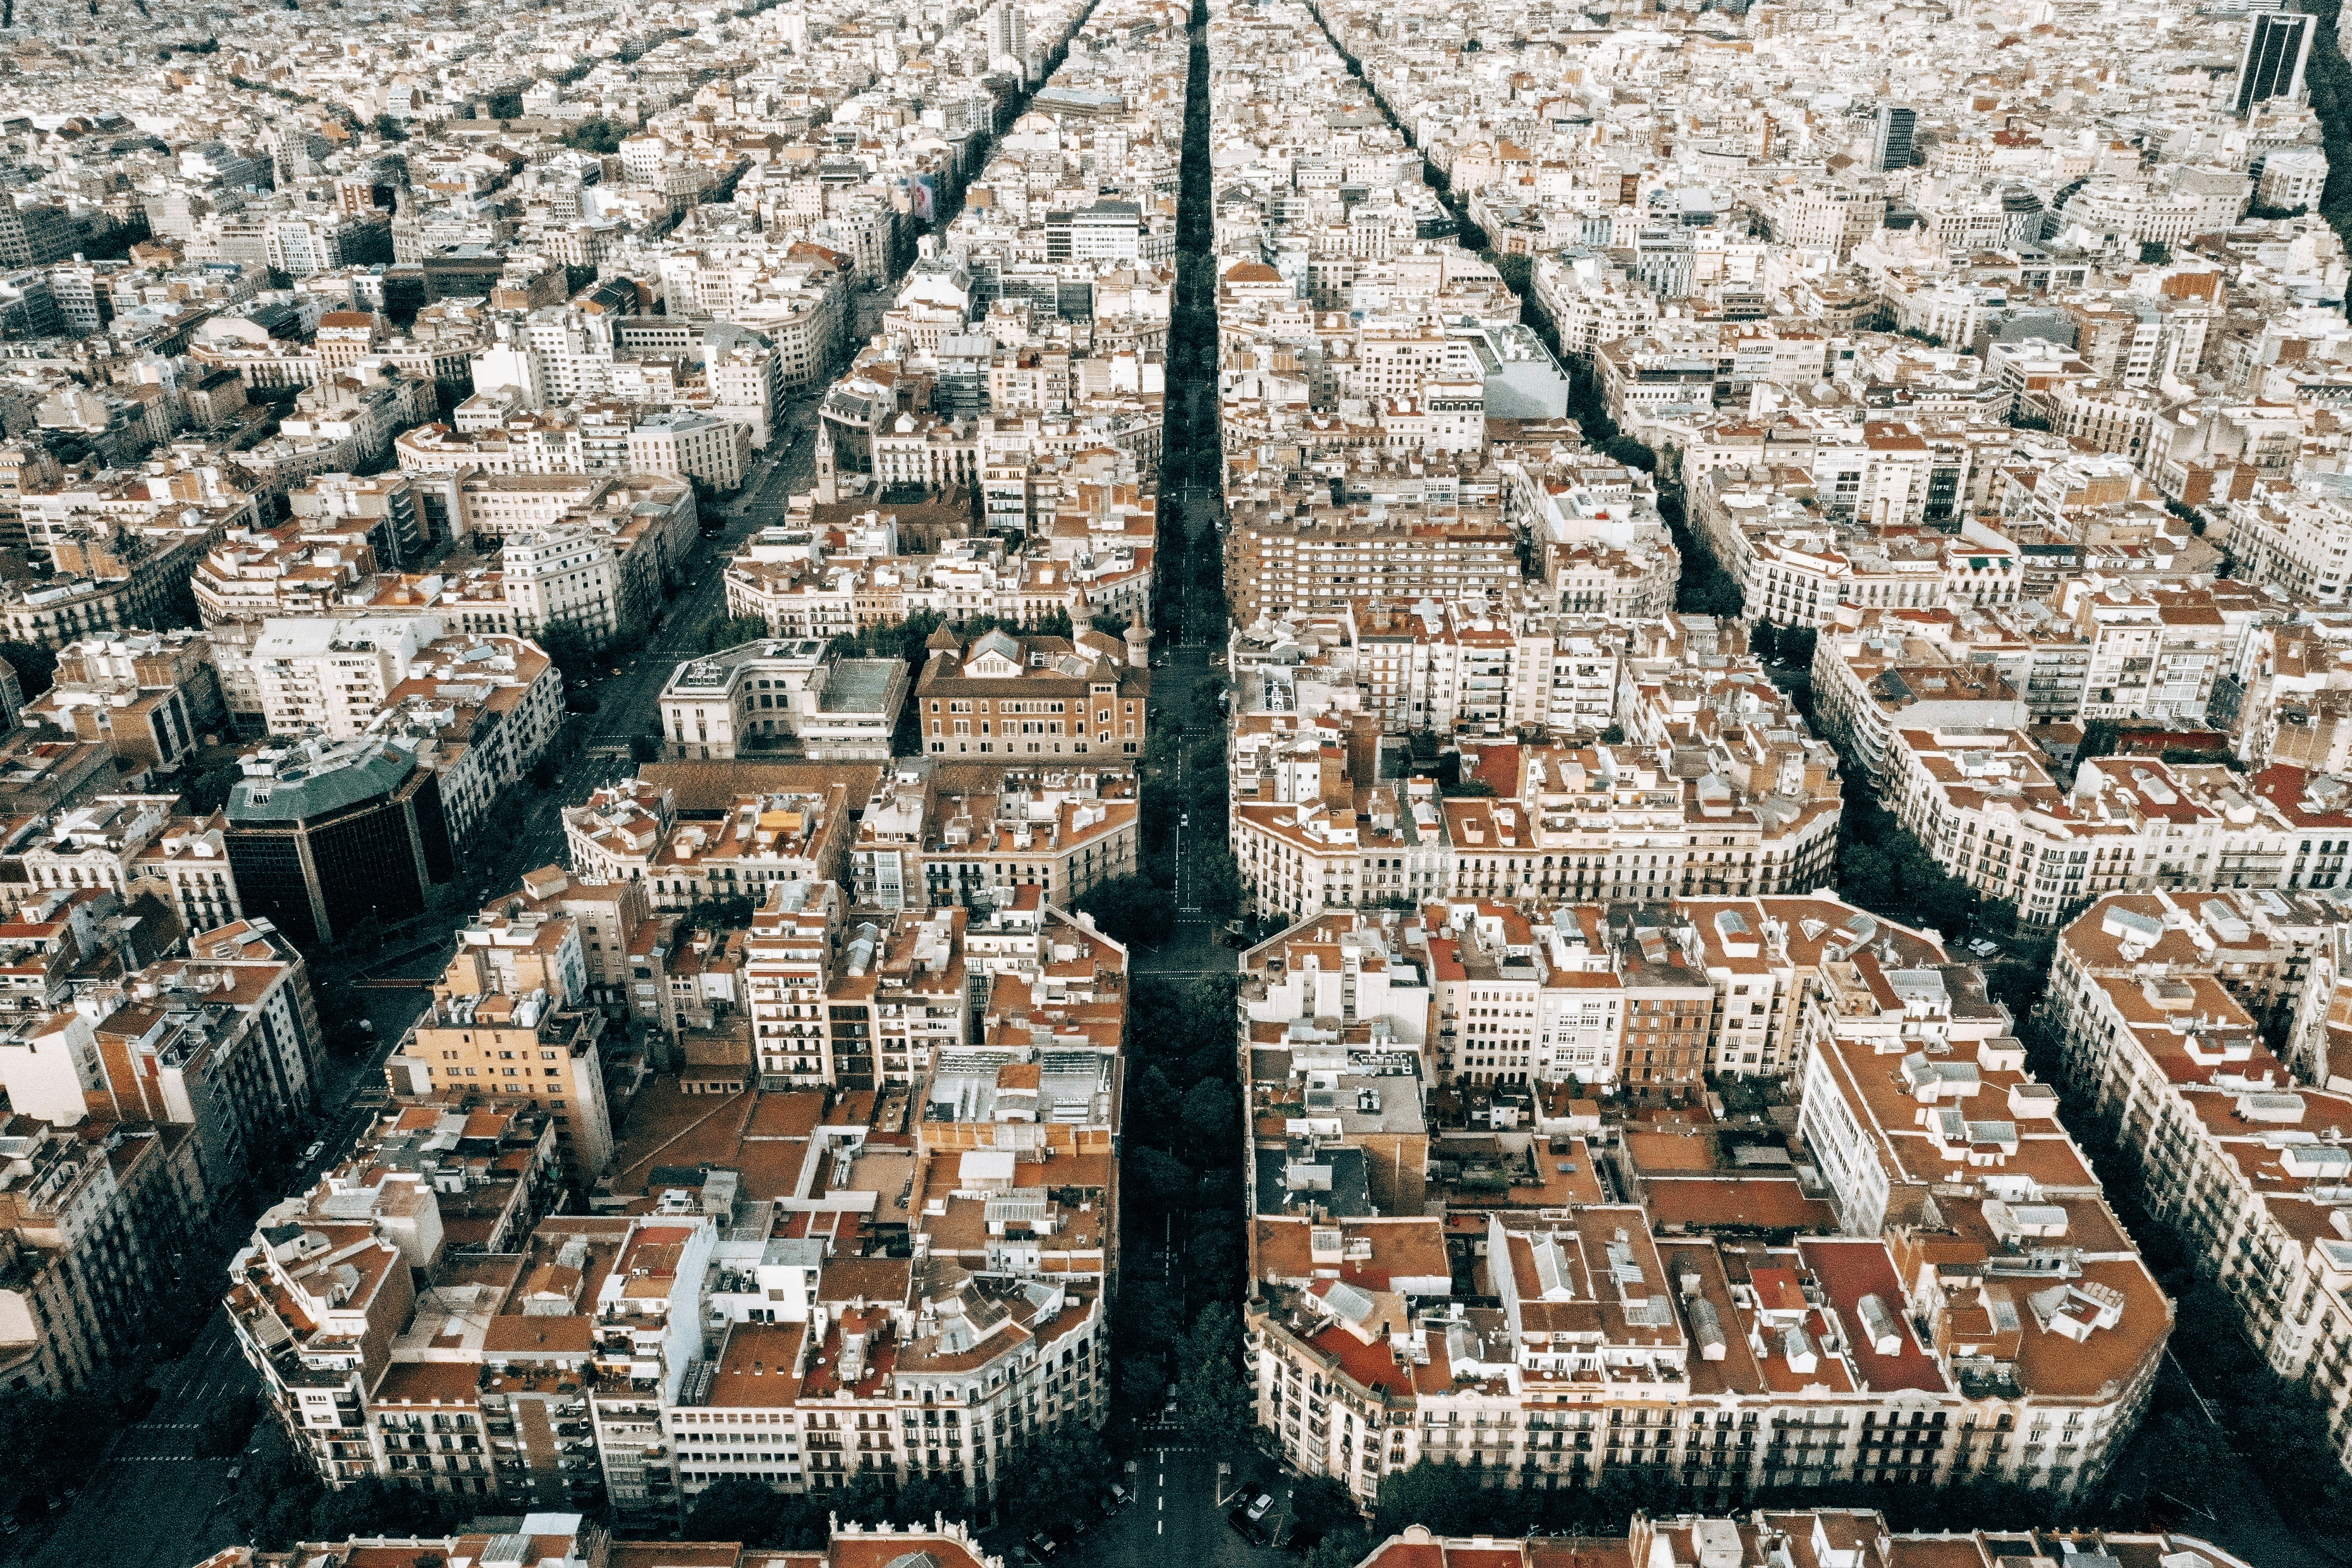 Barcelona, Spain https://instagram.com/upmanis